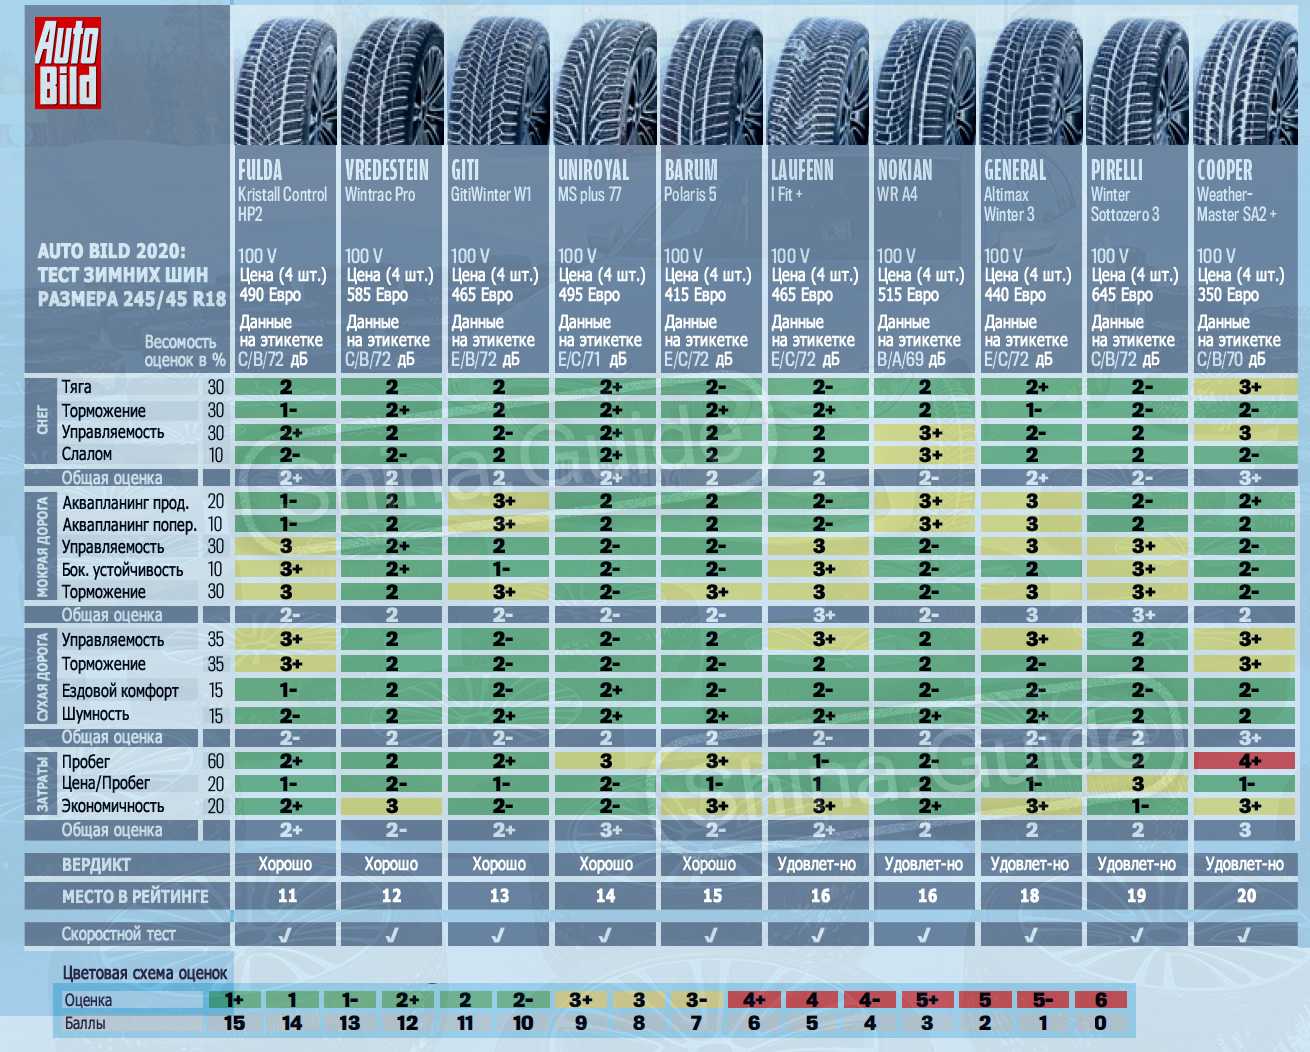 Каковы отзывы о летних шинах Ласса, какие модели вошли в рейтинг ТОП-8 лучших товаров по мнению реальных покупателей, характеристики шин